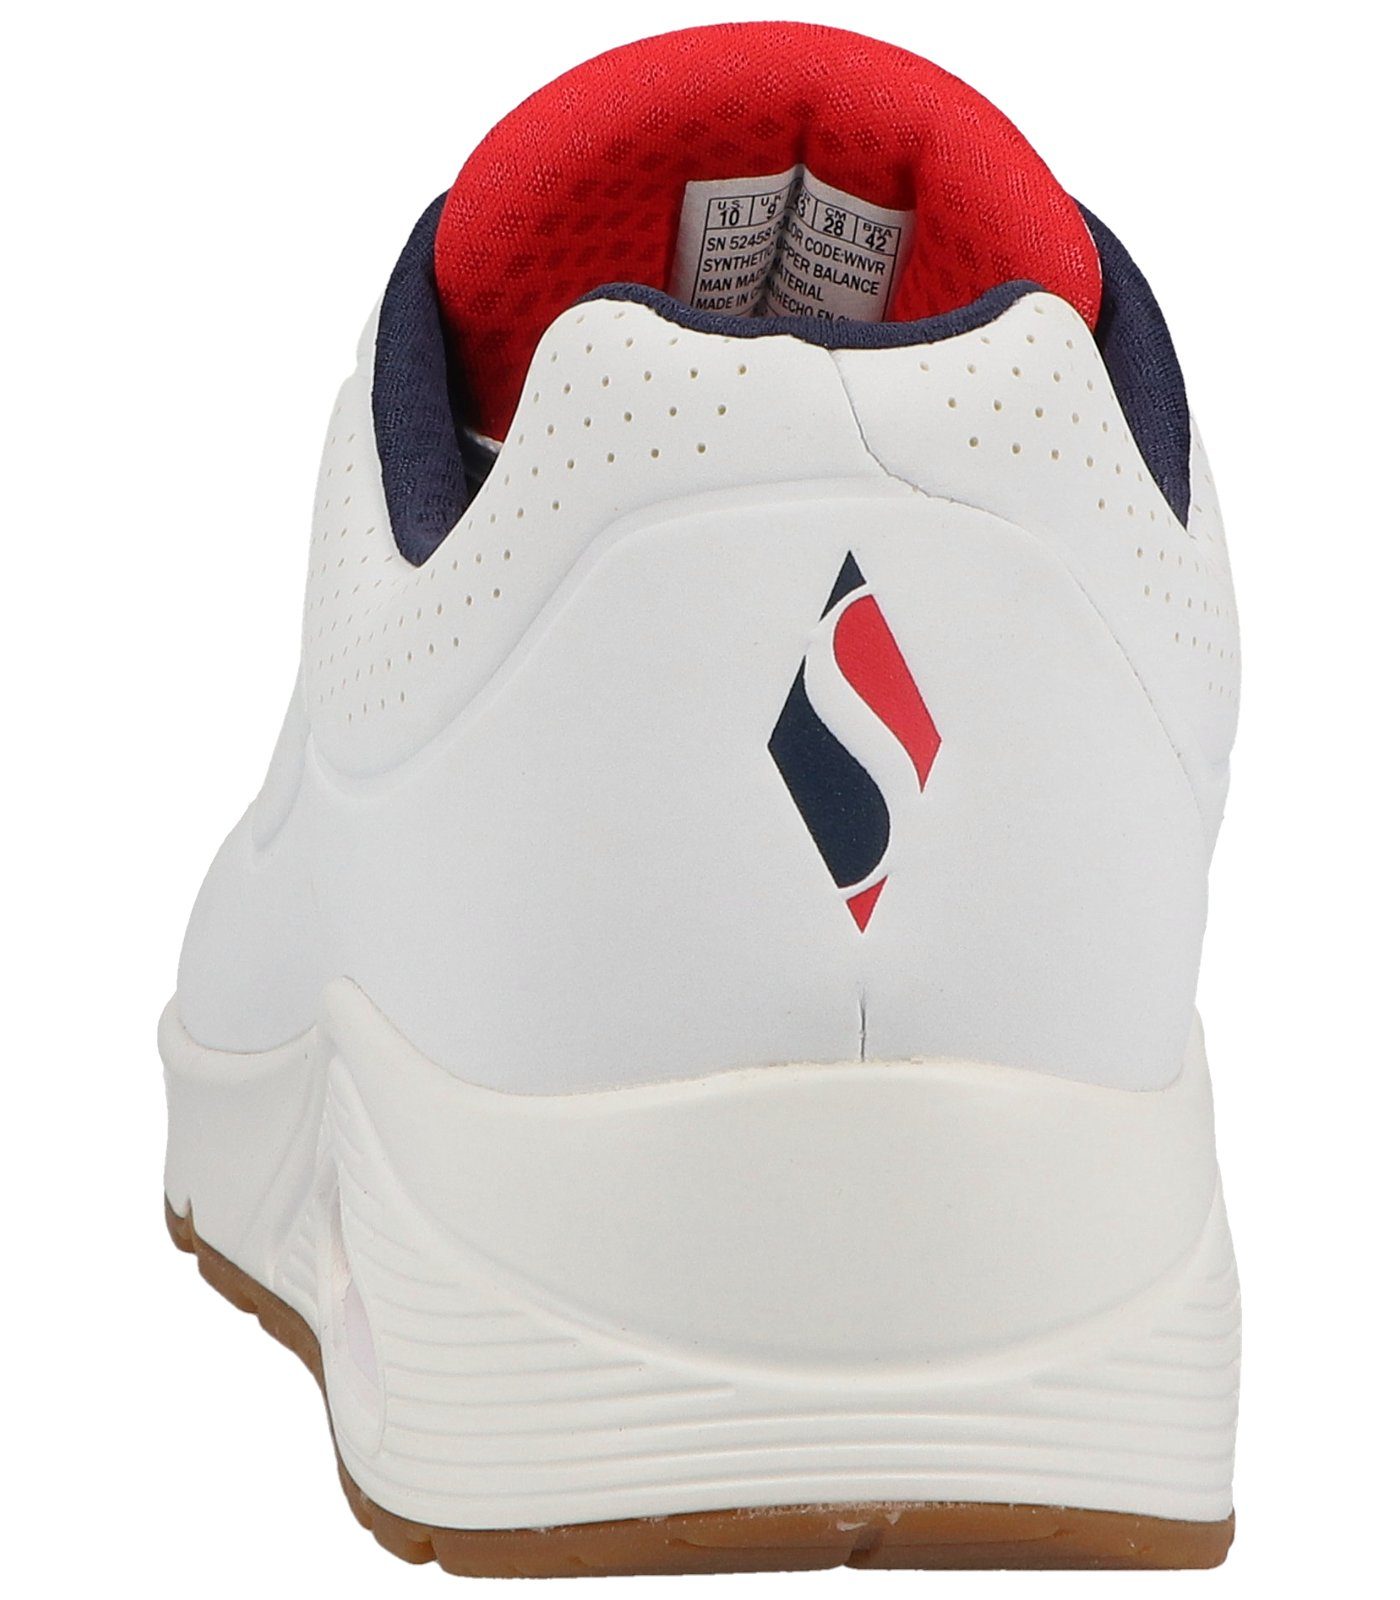 Lederimitat white/navy/red Sneaker Sneaker Skechers